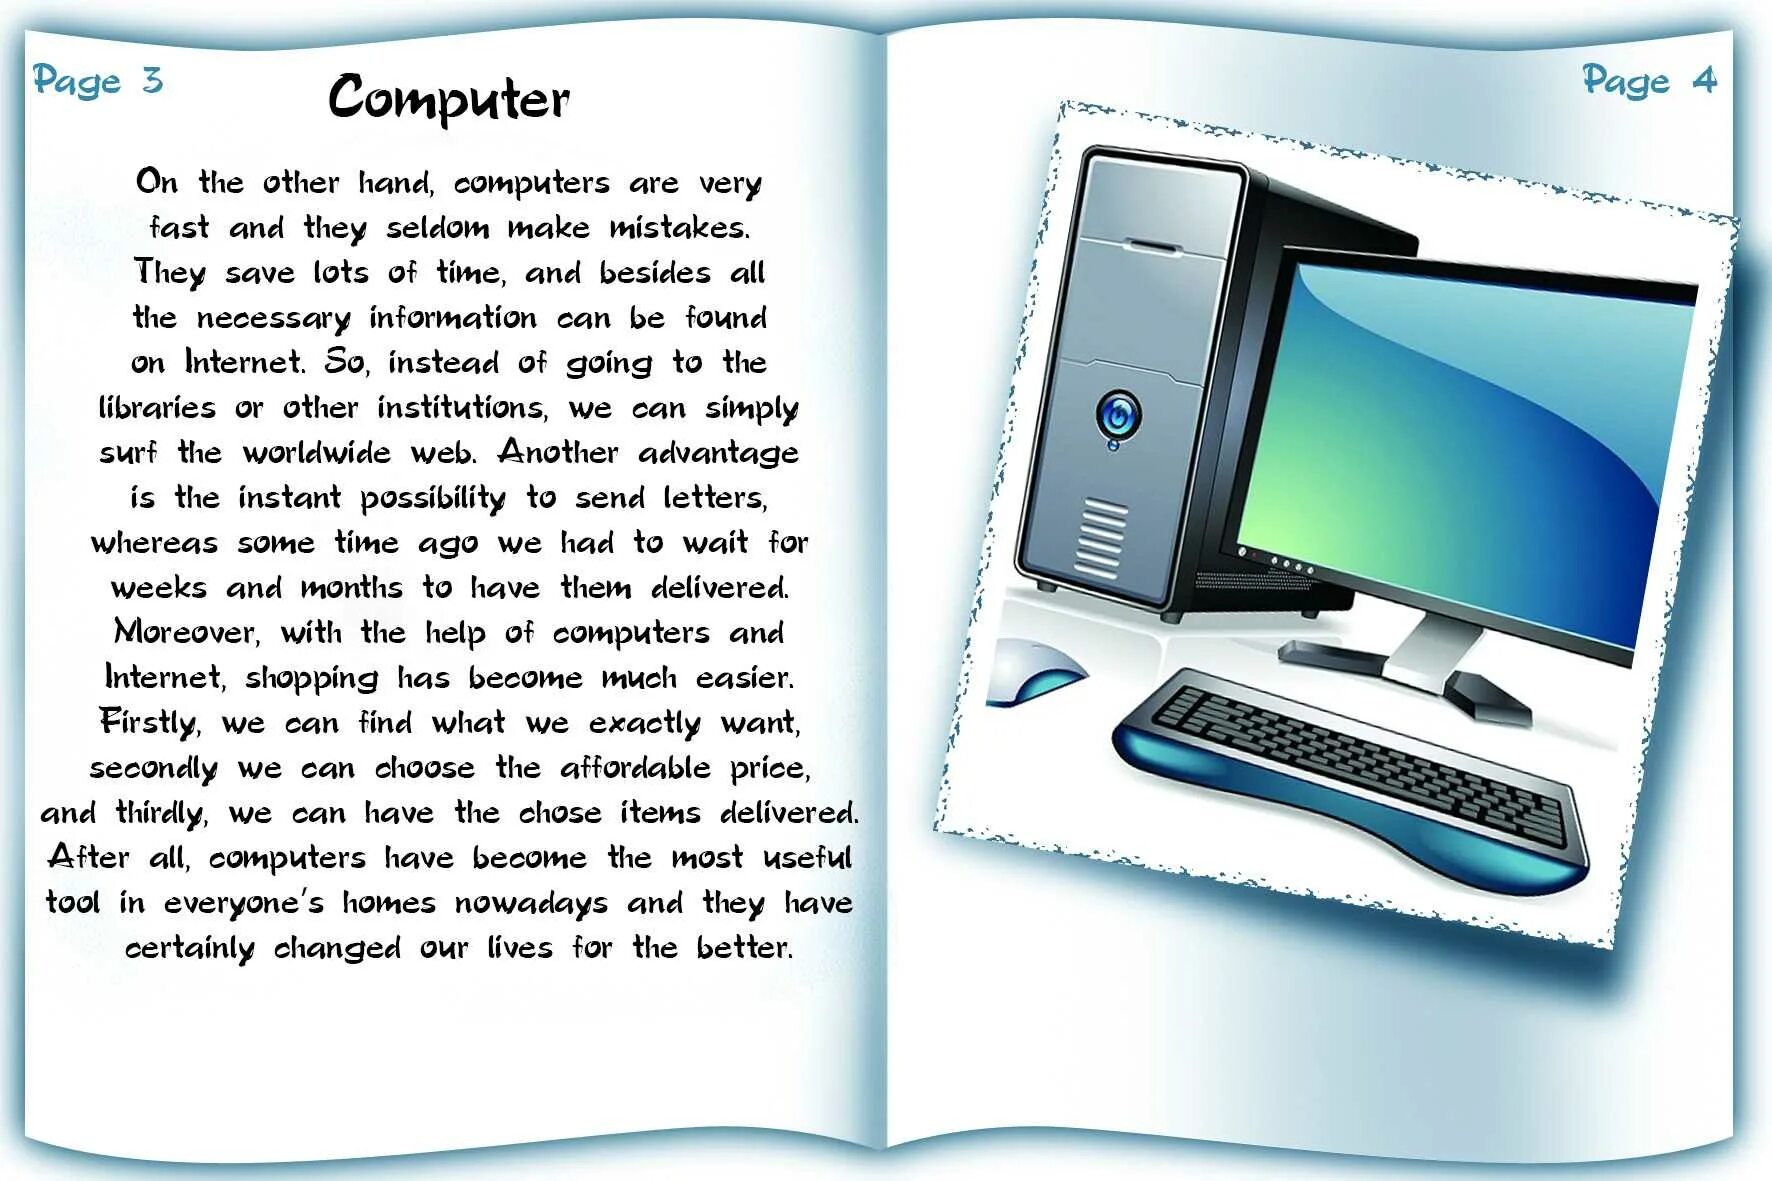 Сочинение про компьютер. Сочинение про гаджеты. Реклама гаджетов. Компьютер с английским текстом.